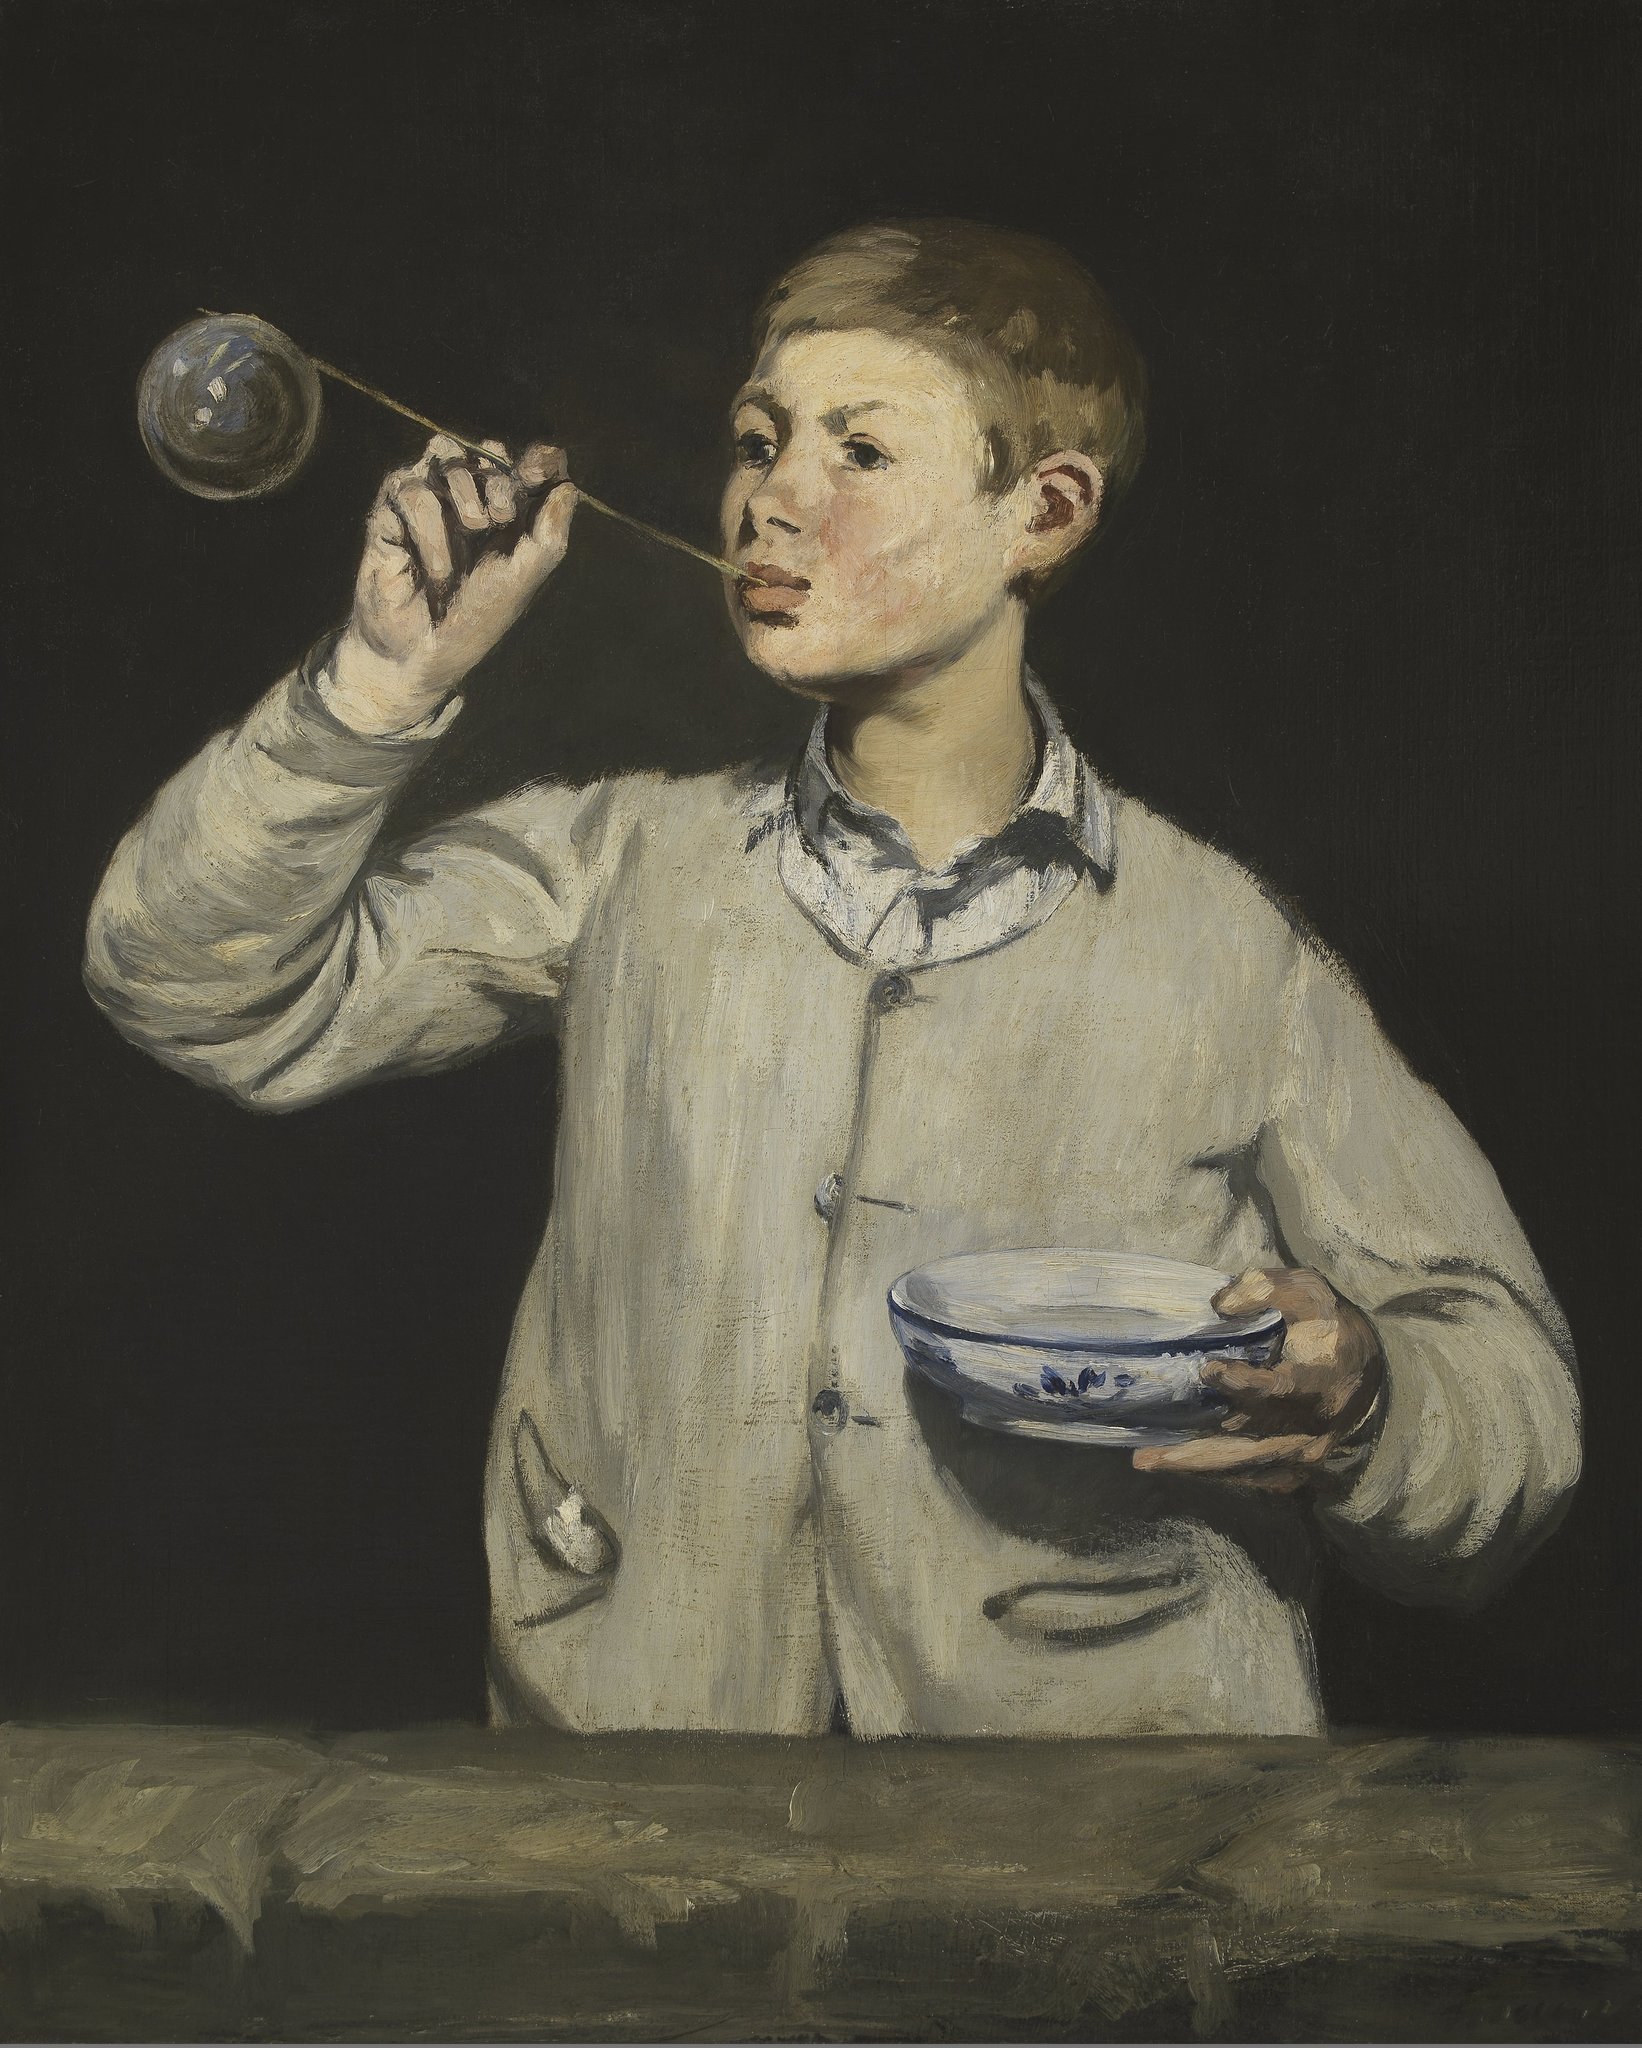 Rapaz Fazendo Bolas de Sabão by Édouard Manet - 1867 - 100.5 x 81.4 cm 